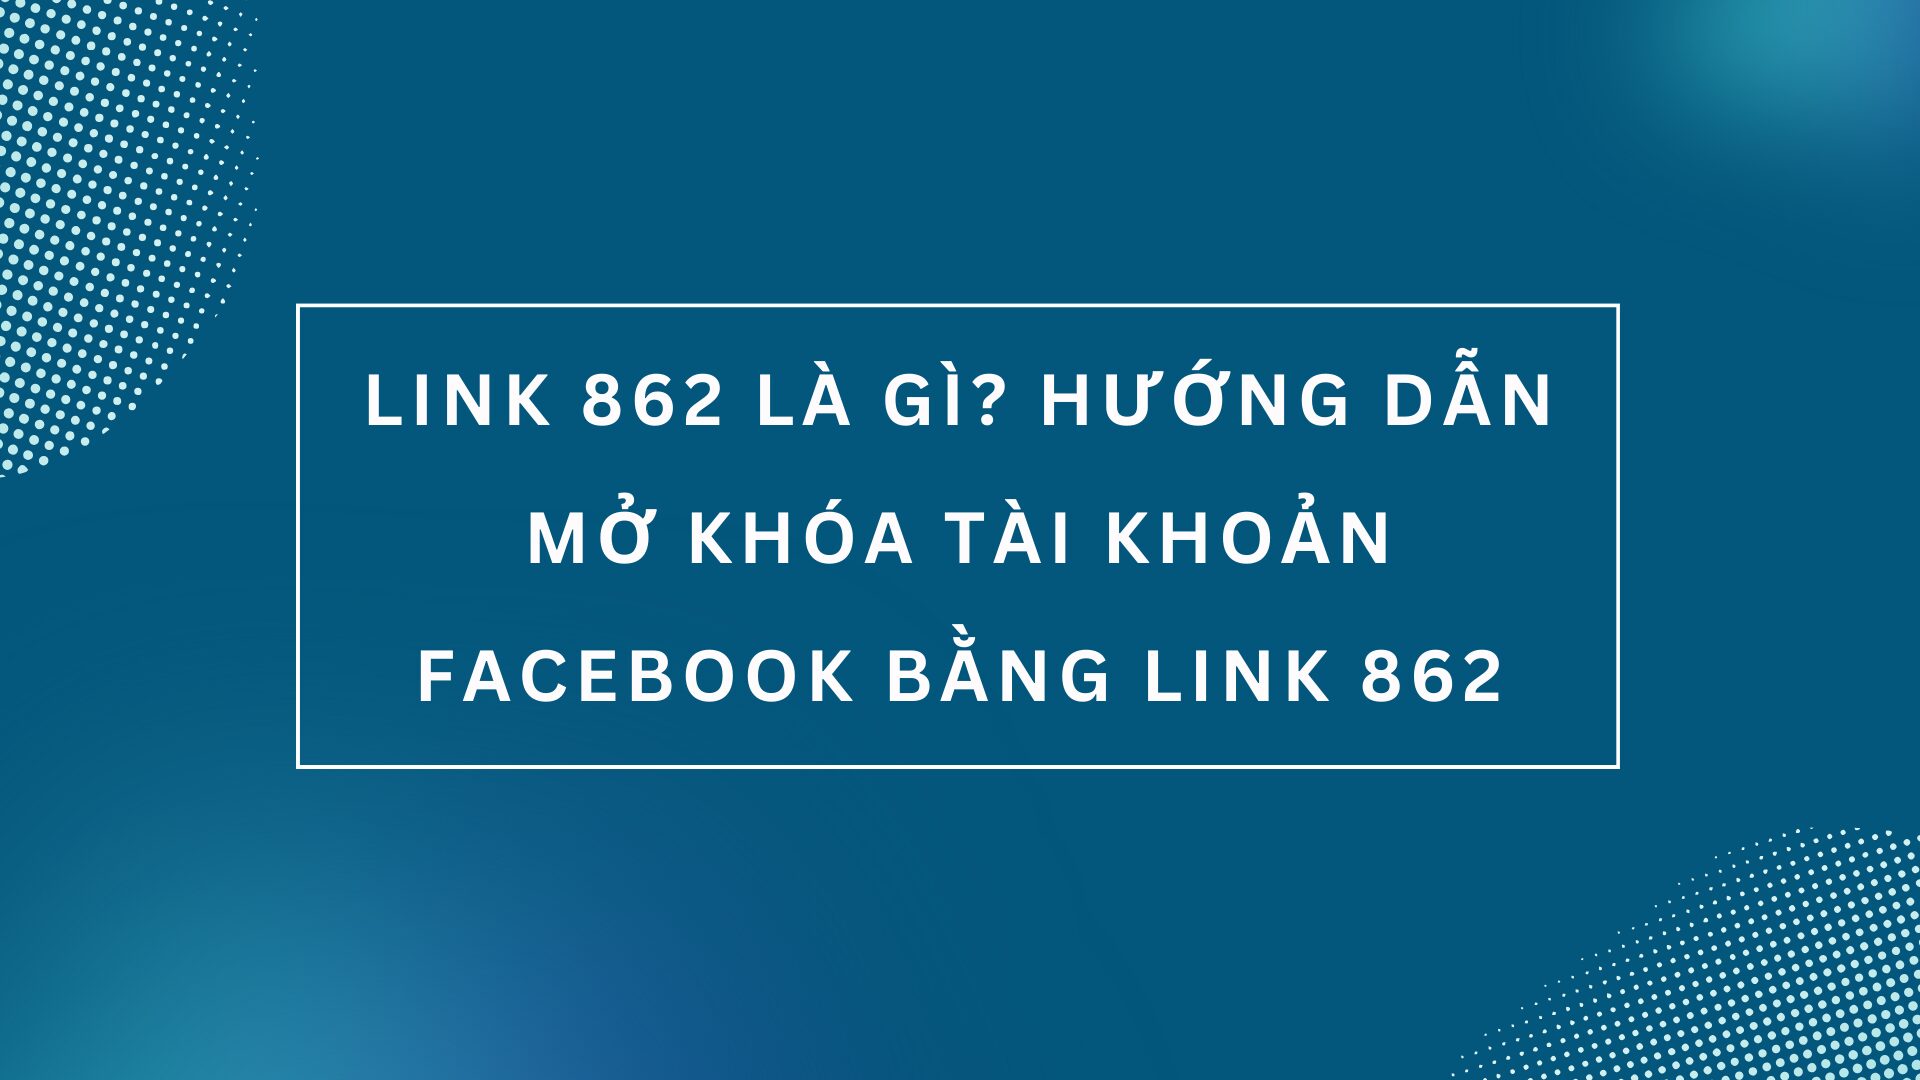 Link 862 là gì? Hướng dẫn mở khóa tài khoản Facebook bằng link 862